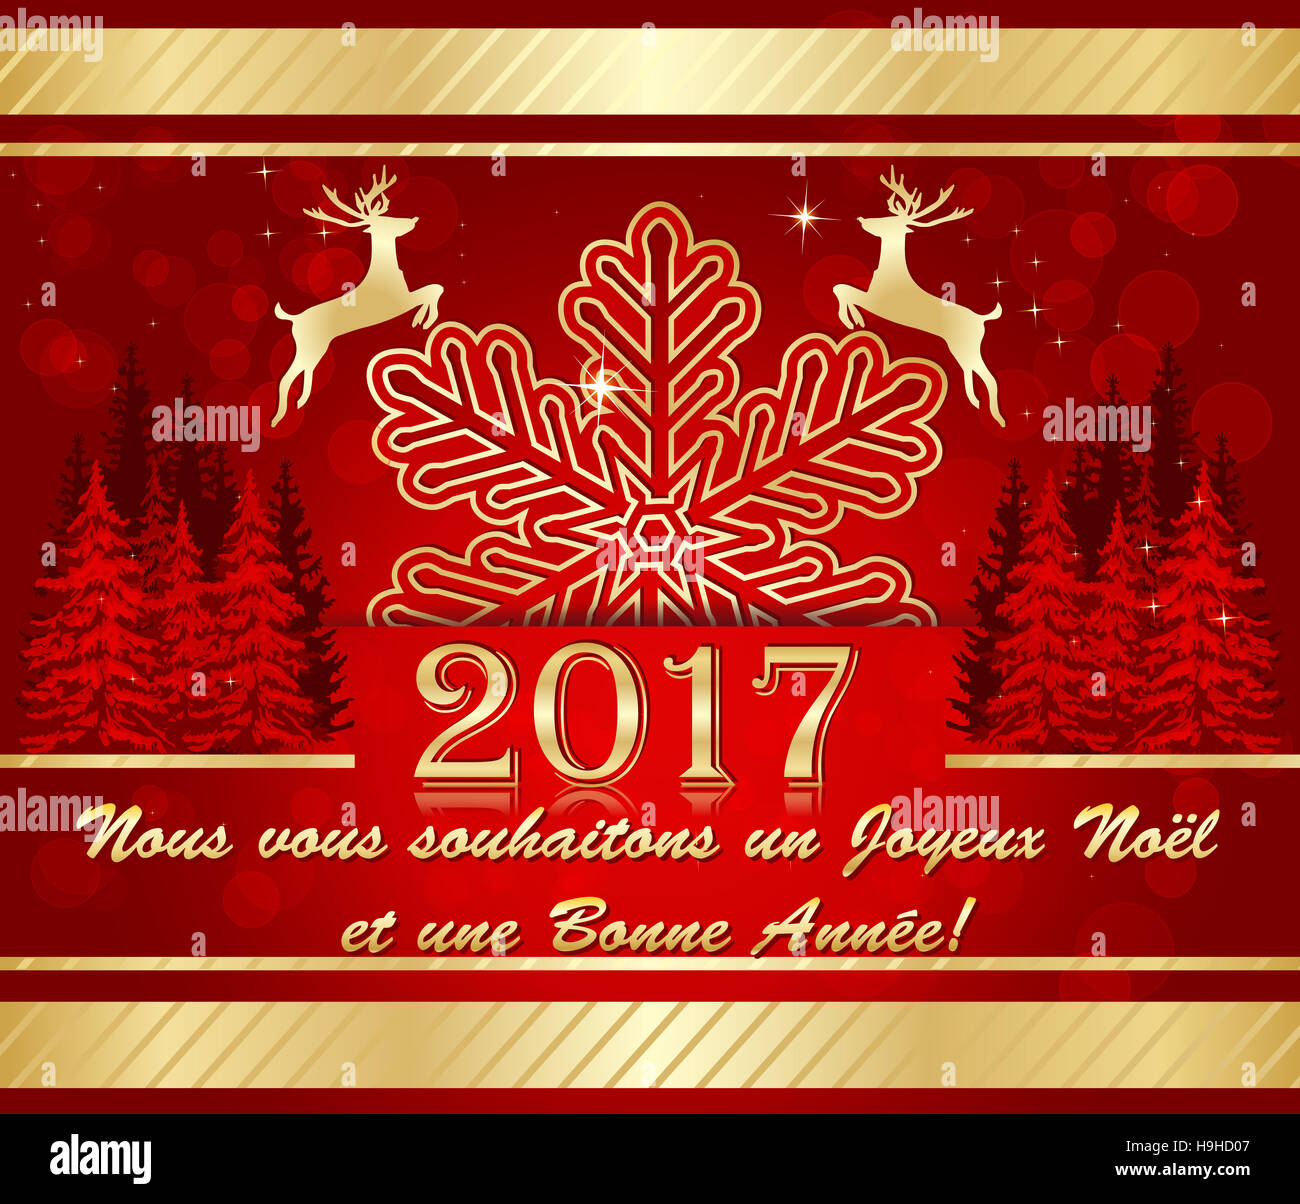 Carte de voeux d'entreprise pour célébrer l'arrivée de la nouvelle année:  Nous vous souhaitons onu Joyeux Noël et une Bonne Année Foto stock - Alamy